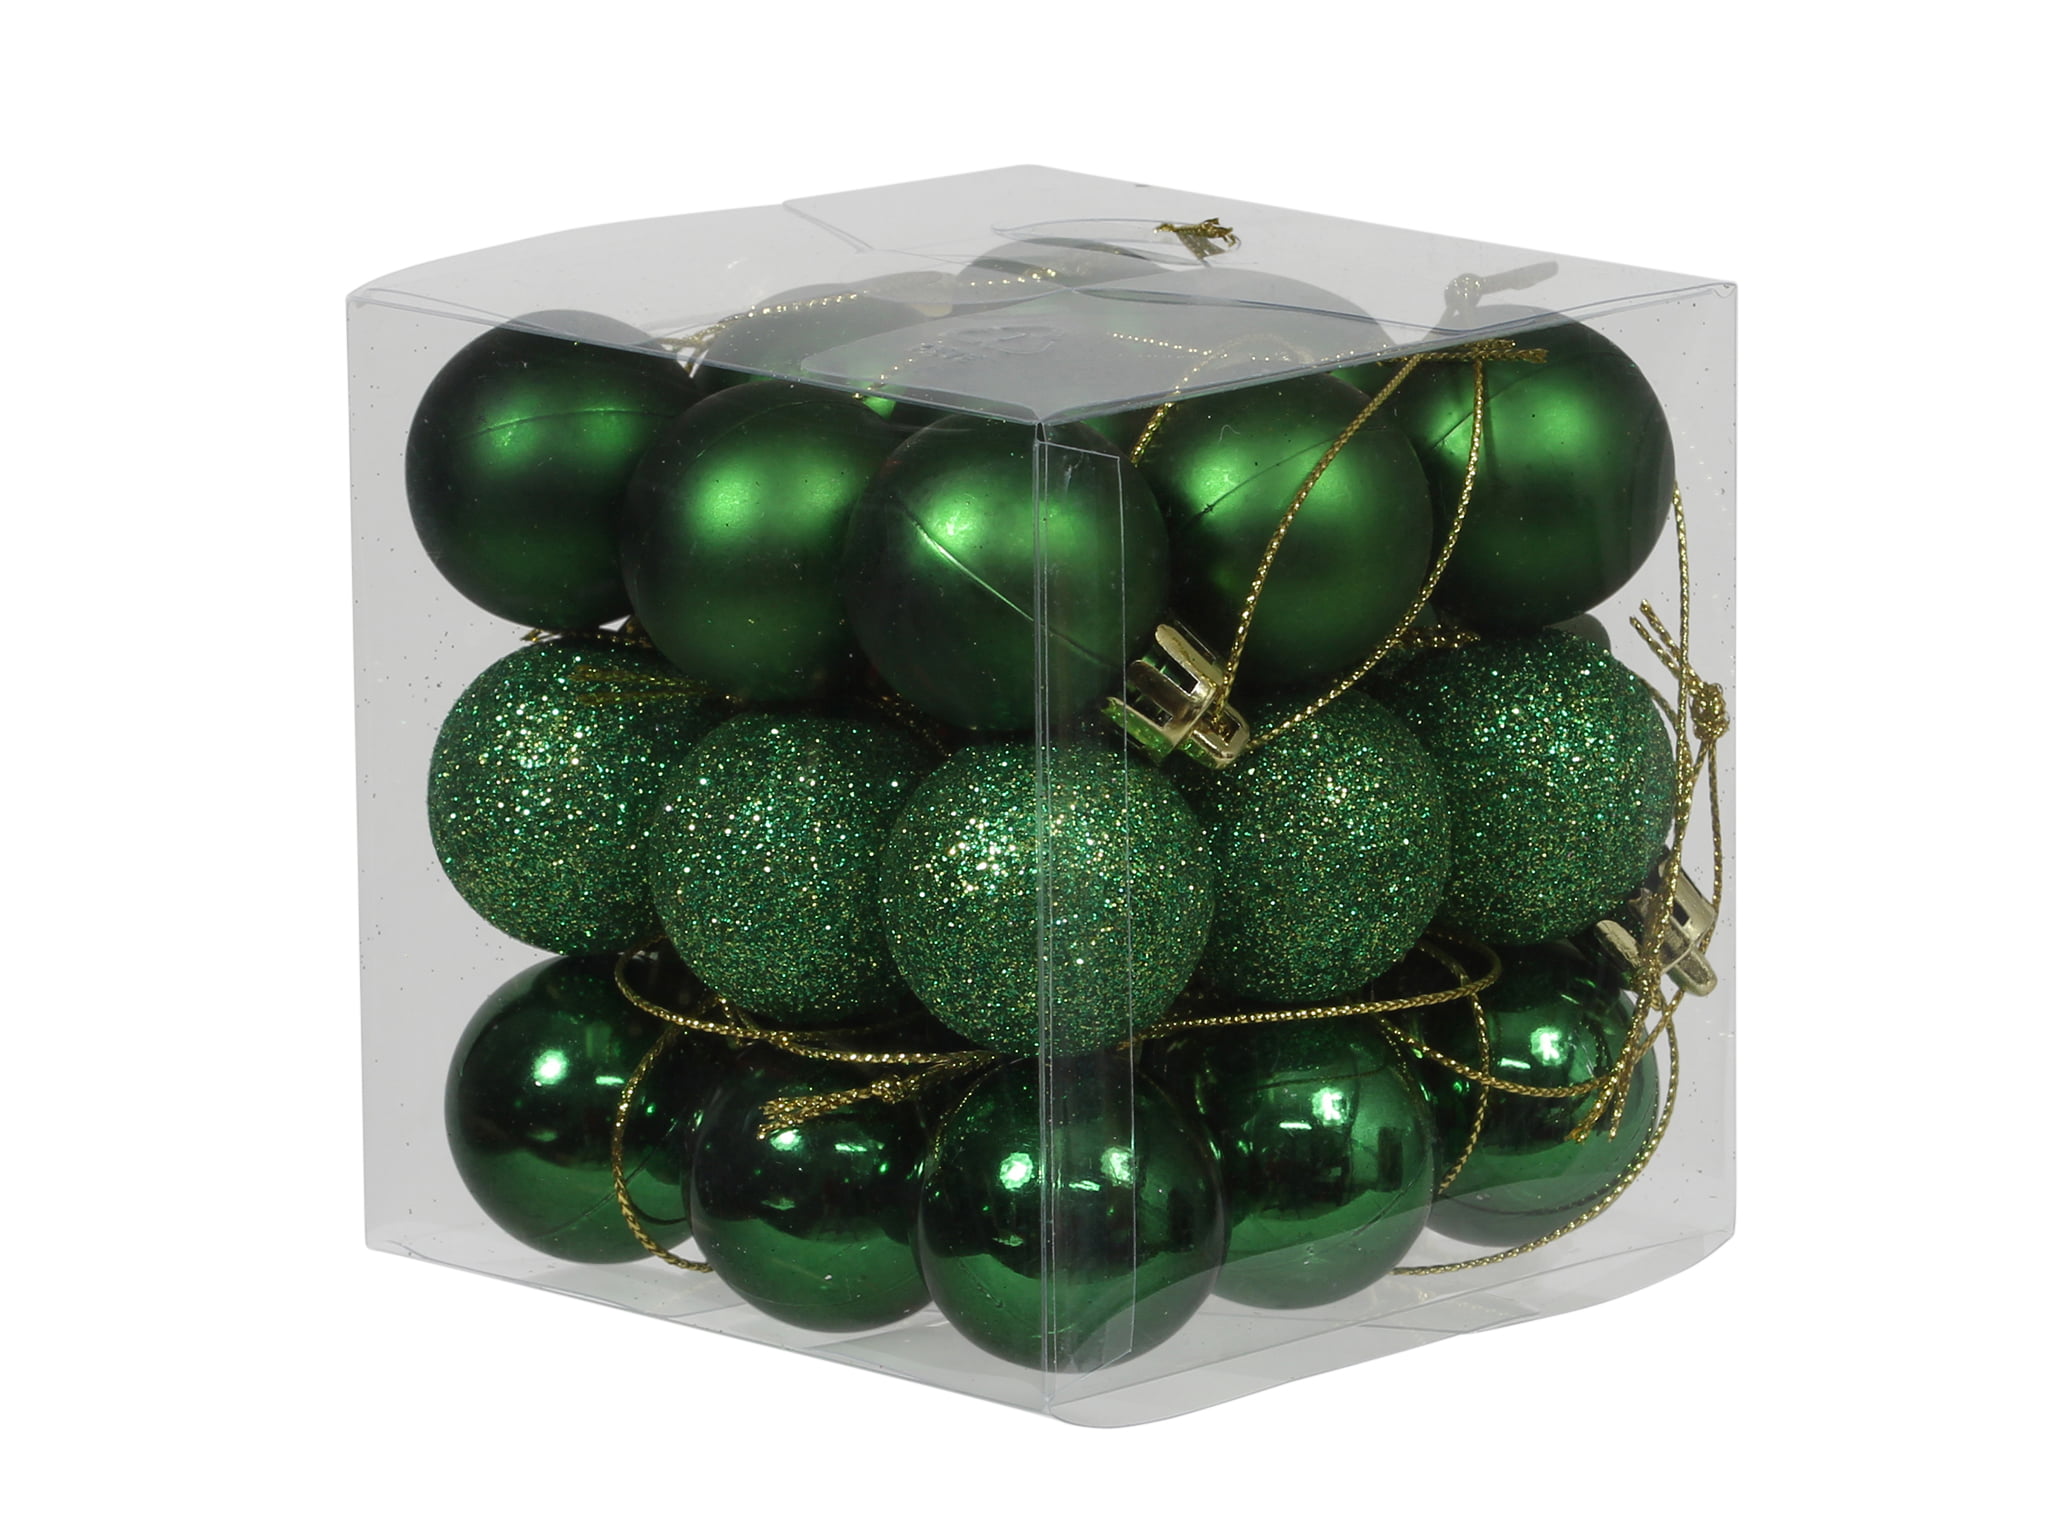 boks med 27 stk. små skovgrønne combi plastik julekugler med forskellige overflader